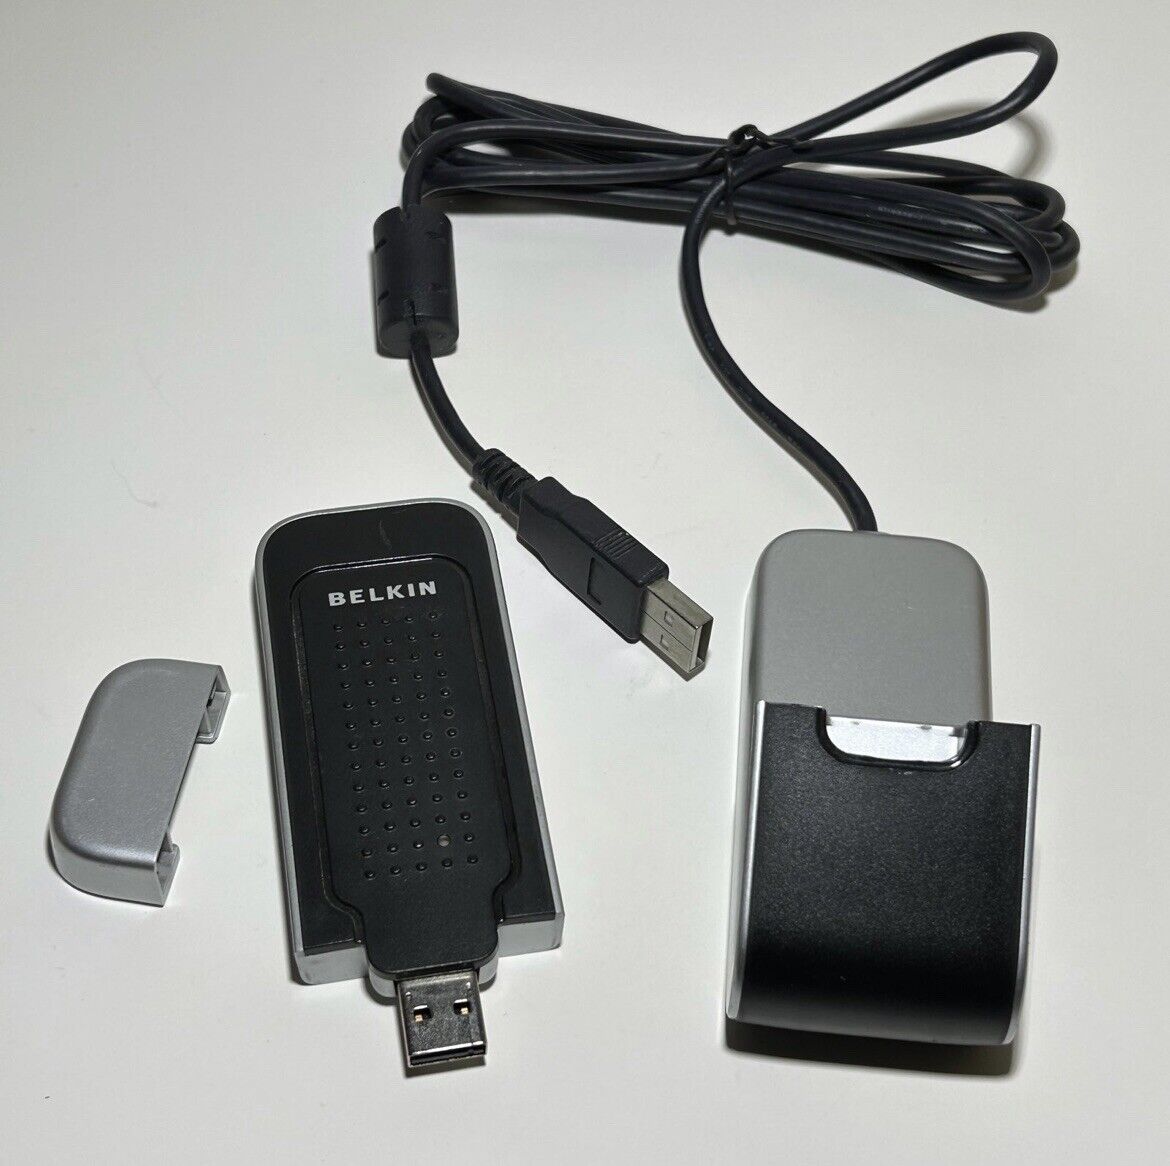 Belkin N1 Wireless USB Adapter With Base